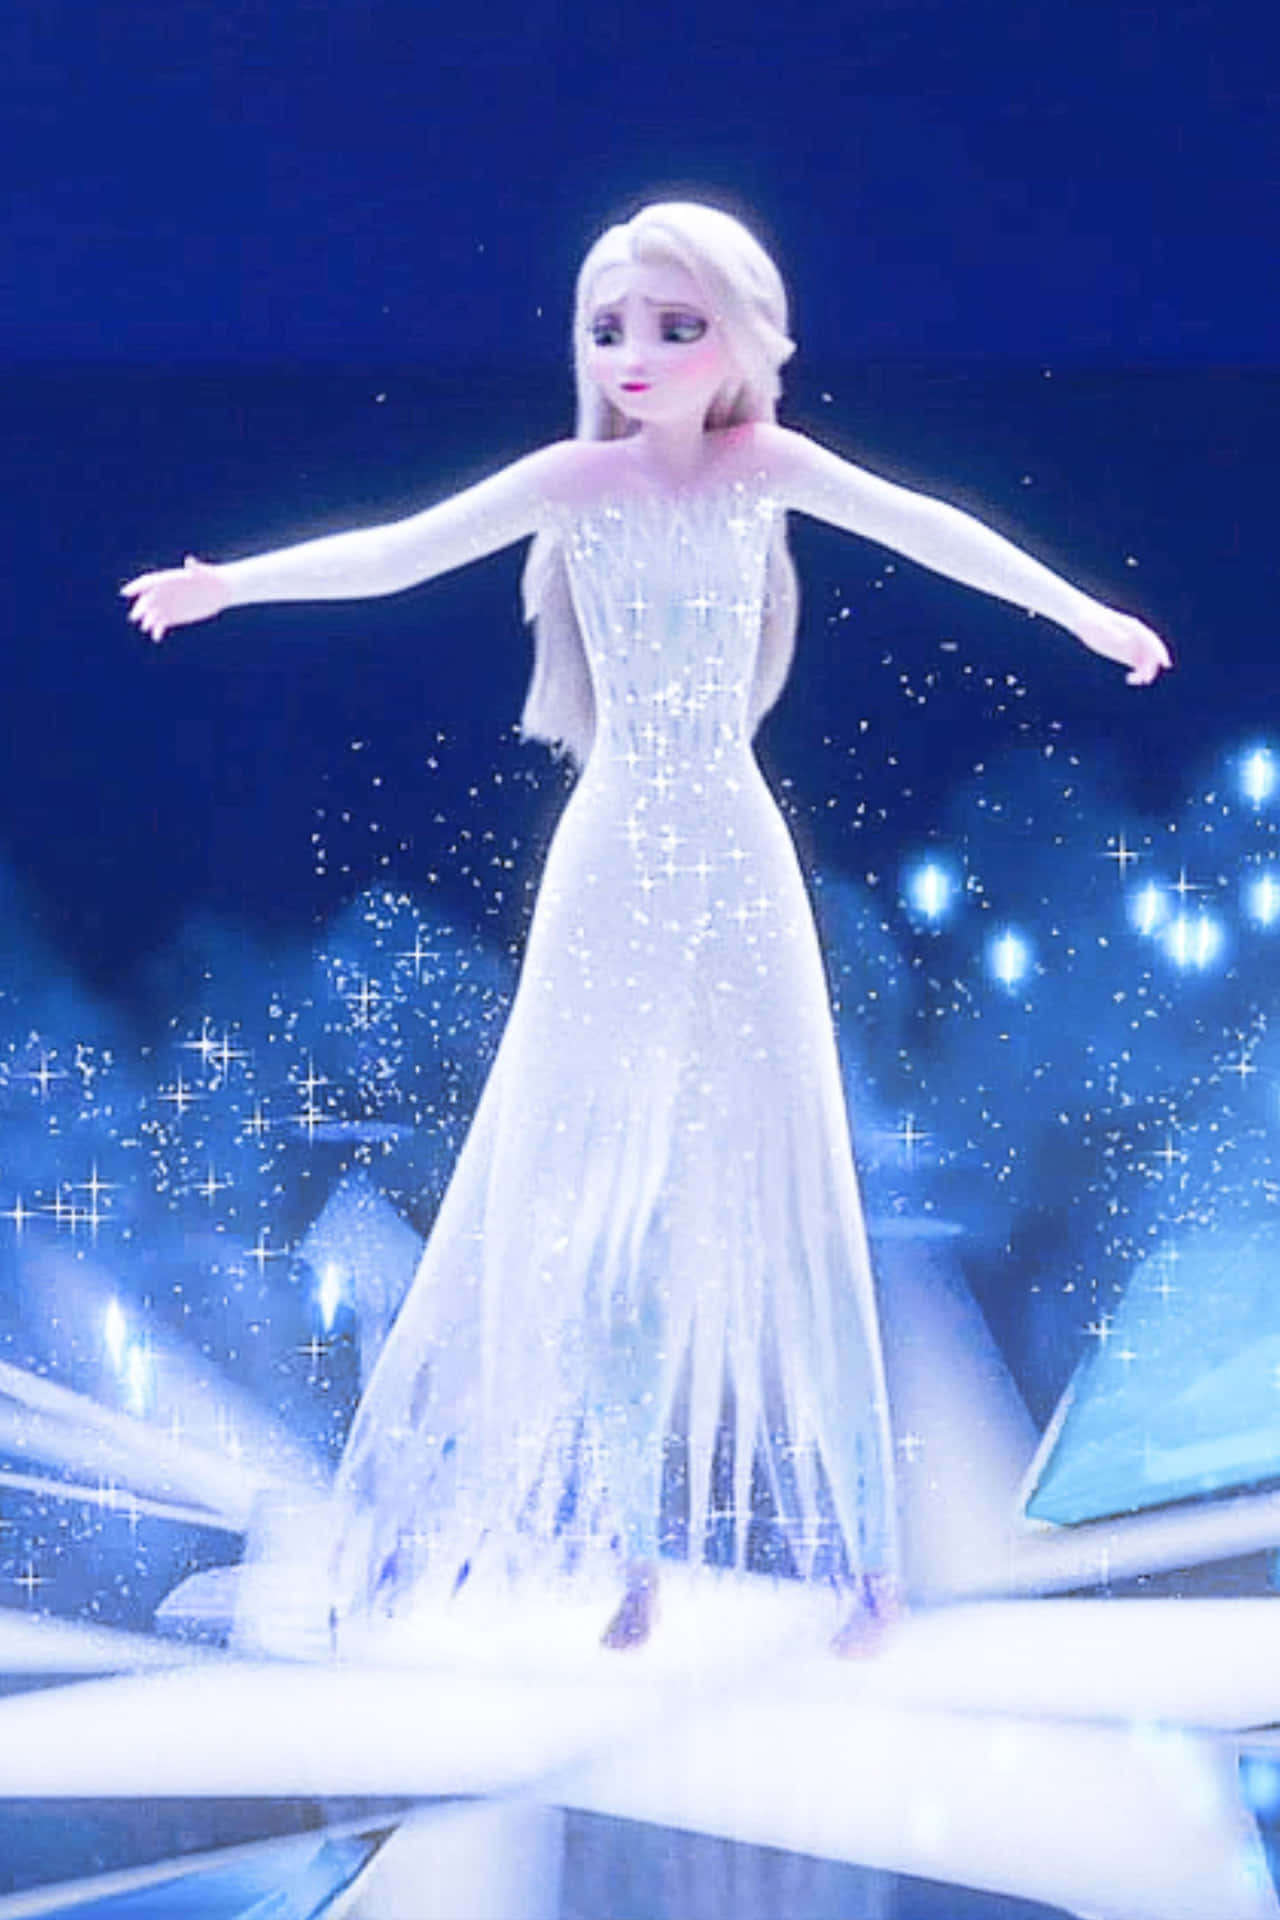 Machensie Sich Bereit, Das Magische Abenteuer Von 'frozen 2' Mit Elsa In Ihrem Wunderschönen Weißen Kleid Zu Erleben. Wallpaper